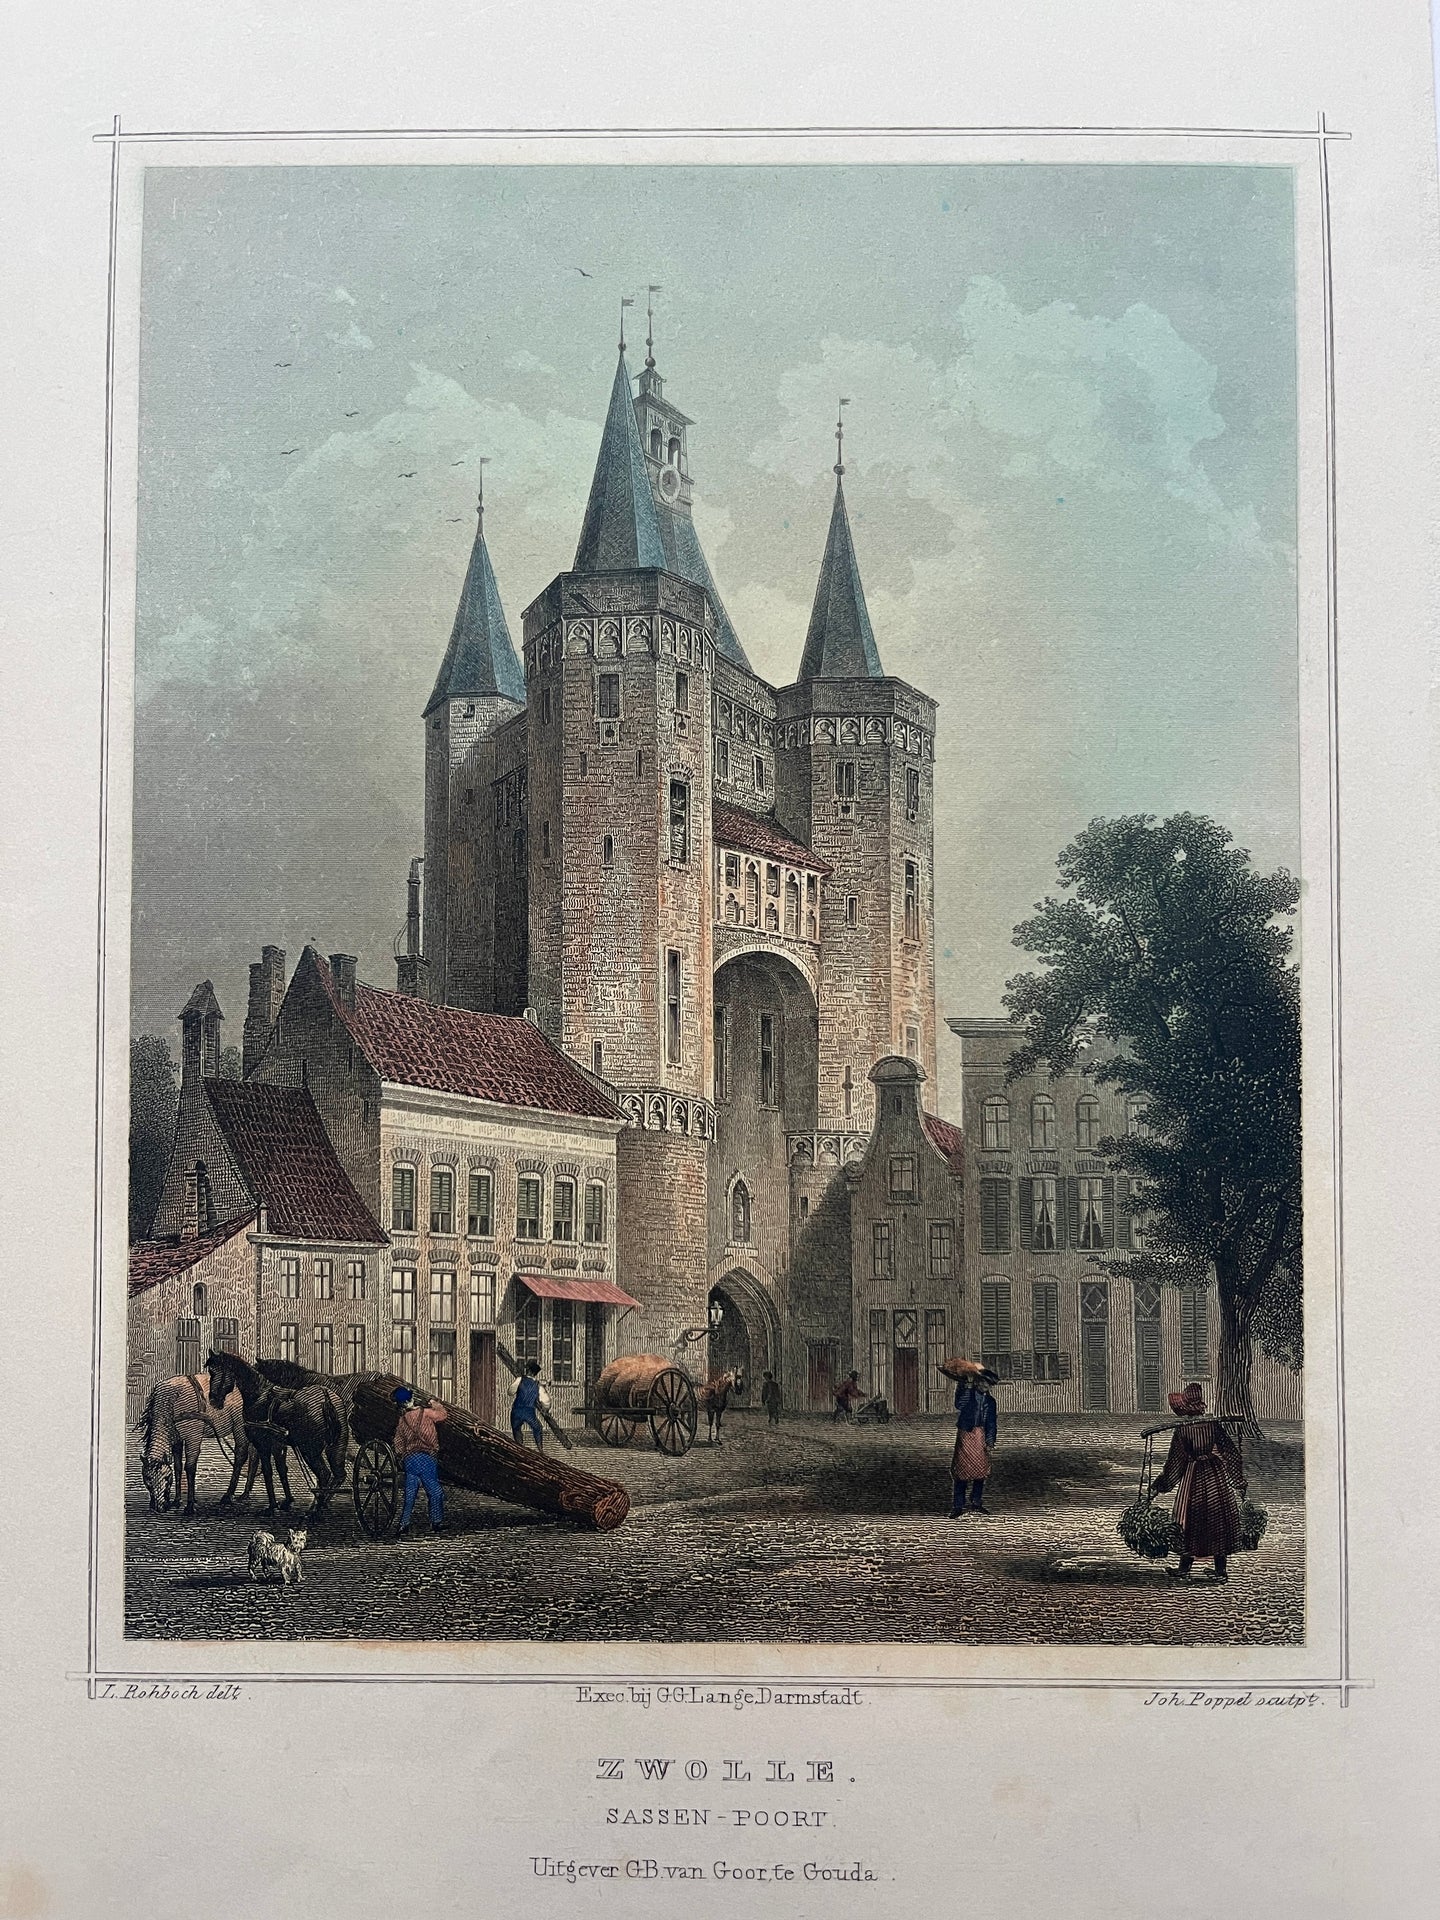 Zwolle Sassenpoort - JL Terwen / GB van Goor - 1858